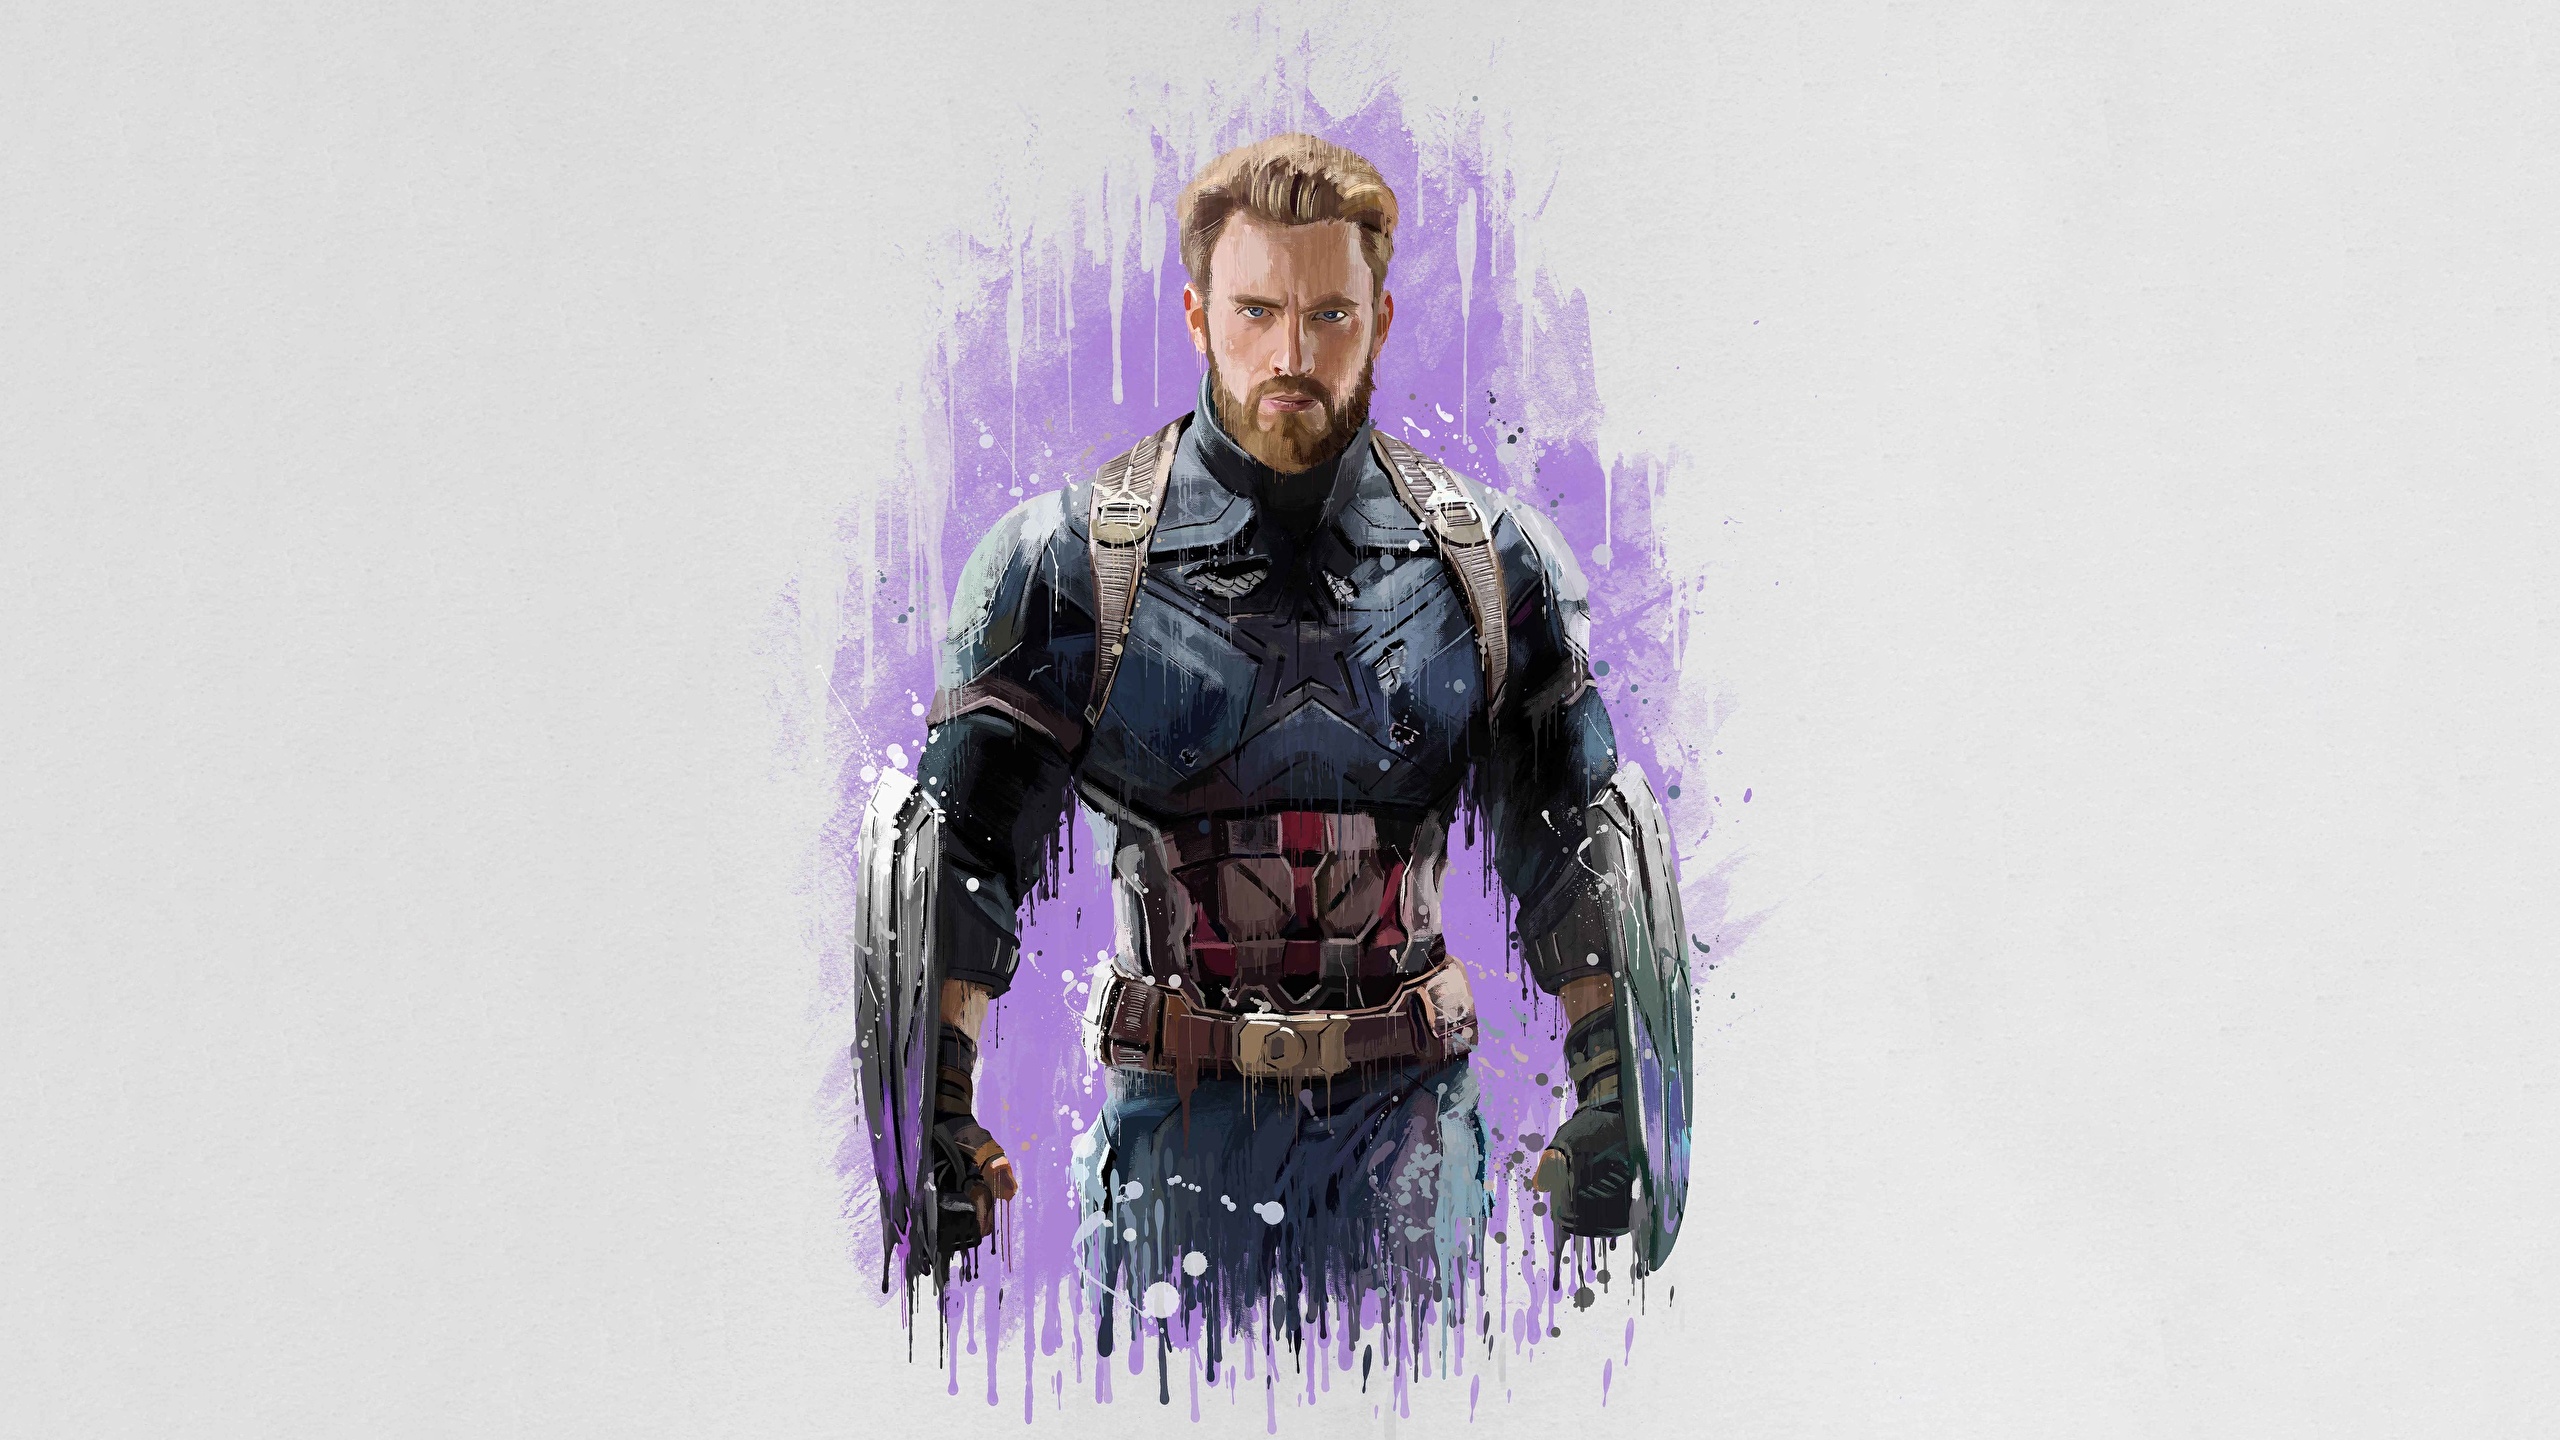 壁紙 2560x1440 Avengers Infinity War キャプテン アメリカ 描かれた壁紙 クリス エヴァンス 映画 有名人 ダウンロード 写真